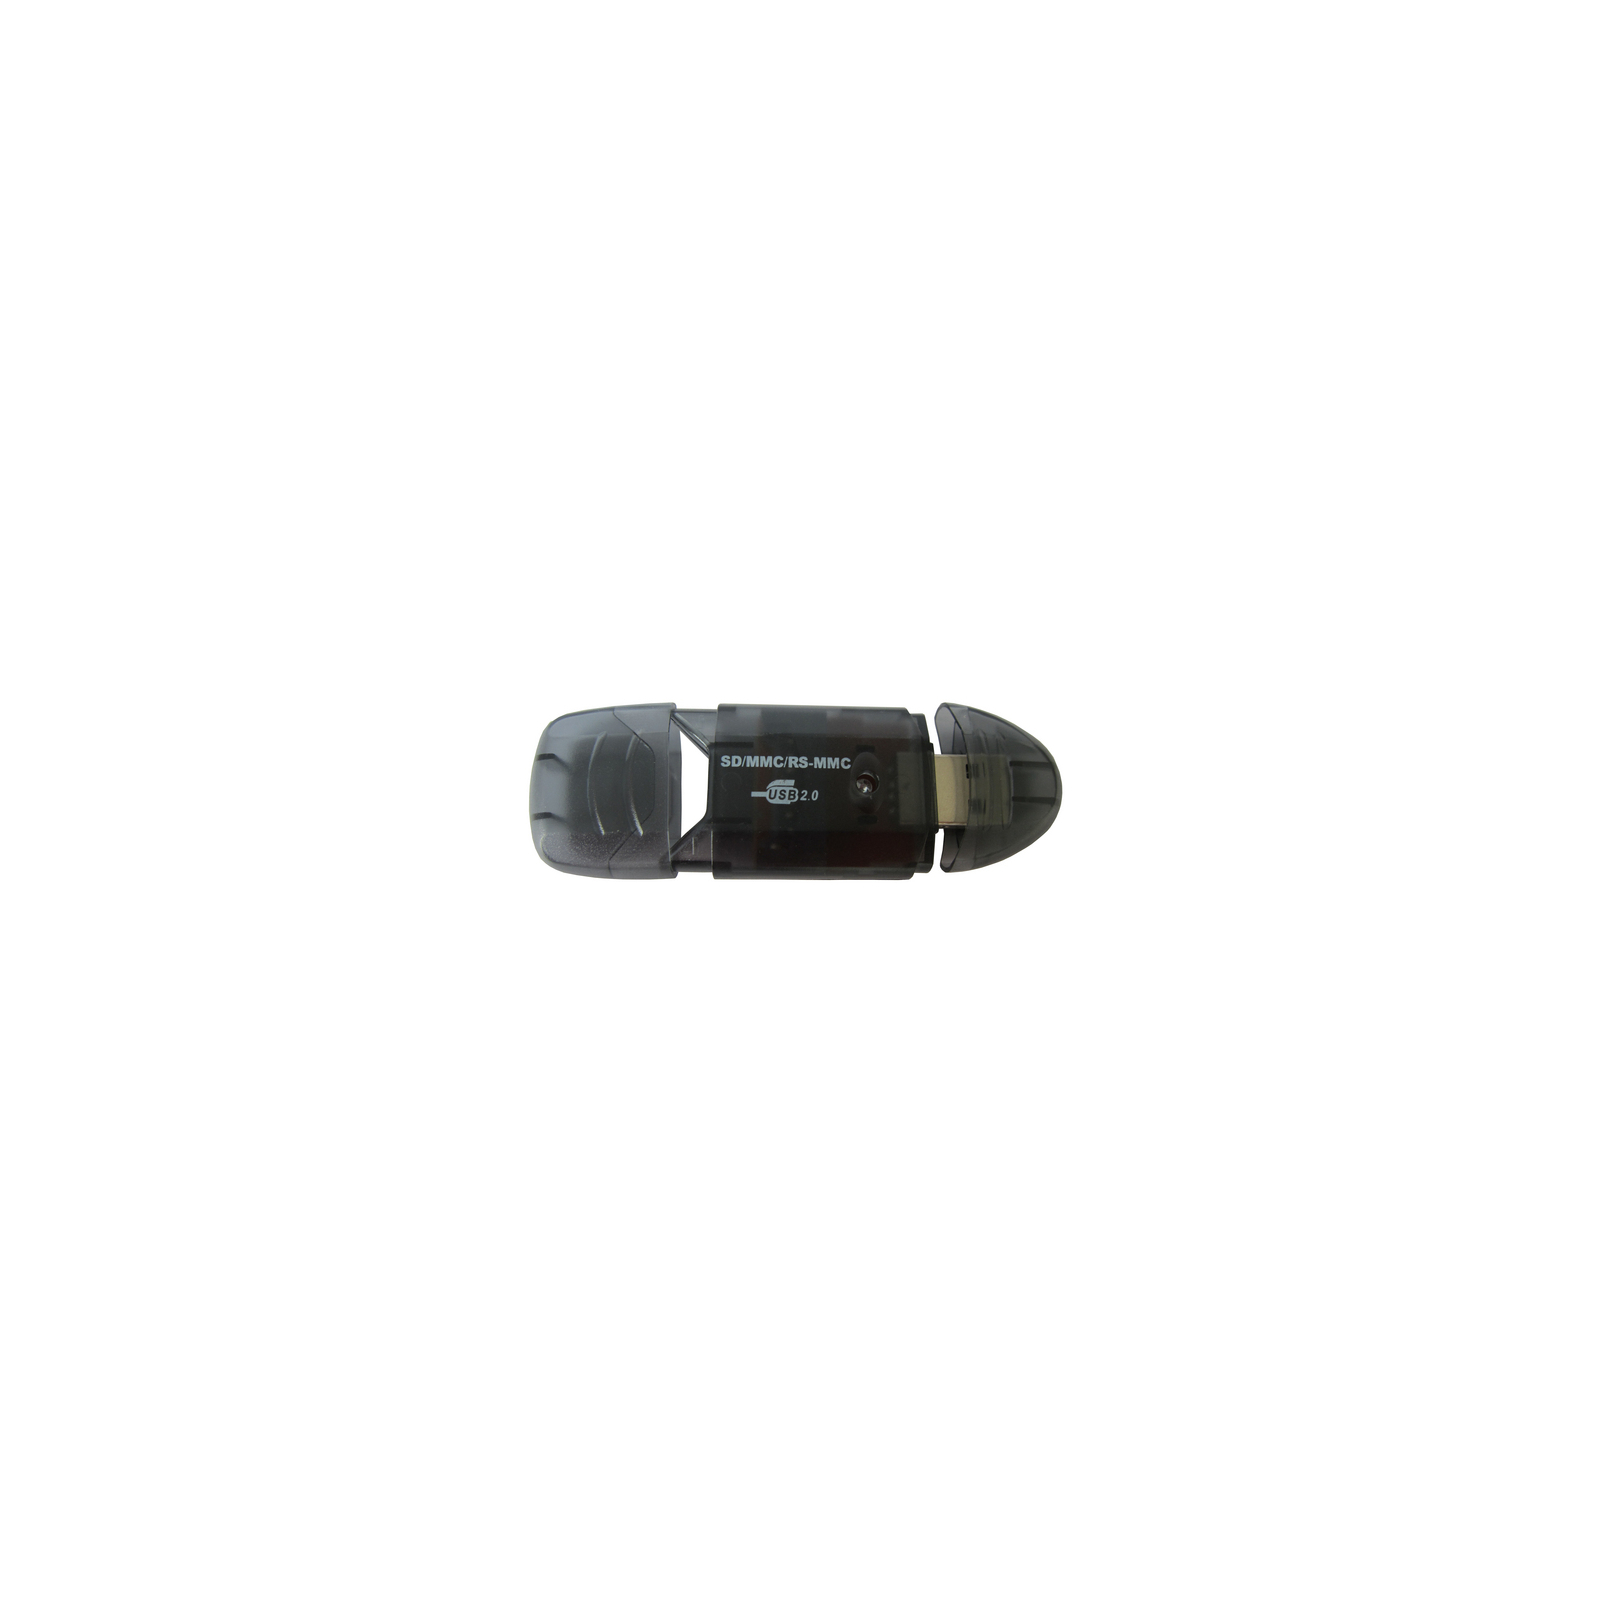 Зчитувач флеш-карт ST-Lab SD/ SDHC/ MMC /RS-MMC (U-371 black) зображення 2